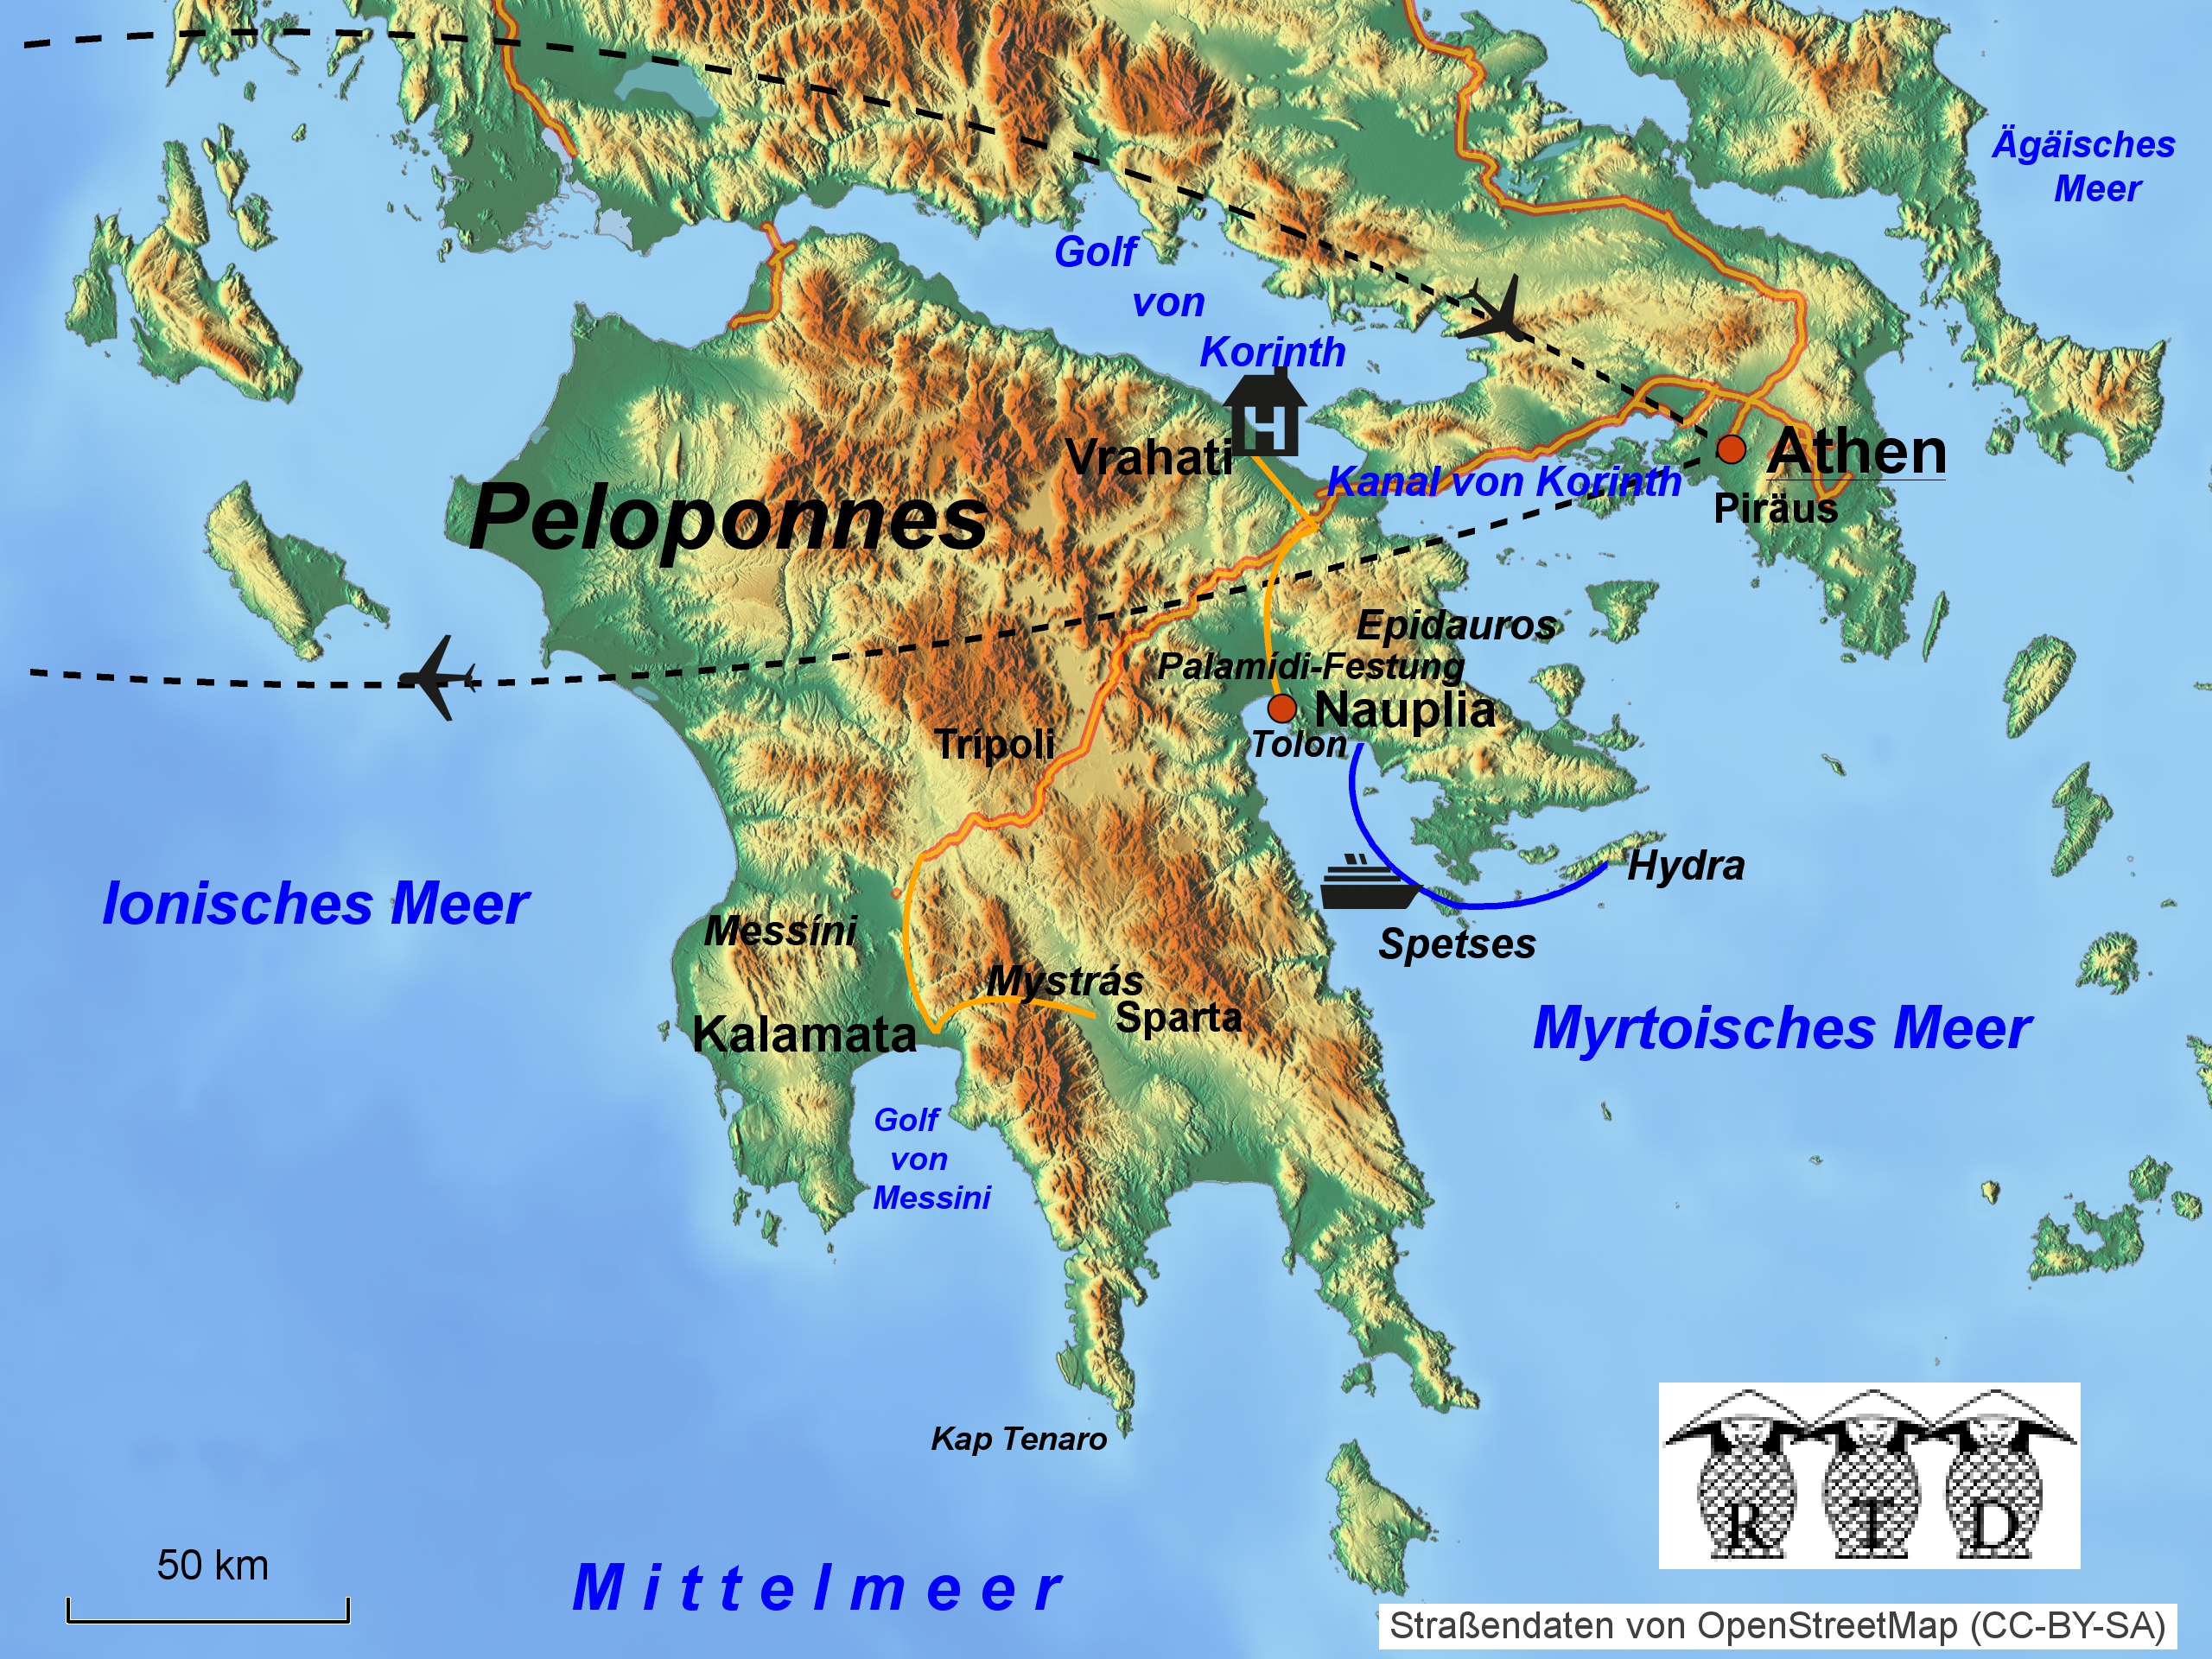 Патры, греция – крупнейший город и порт на пелопоннесе